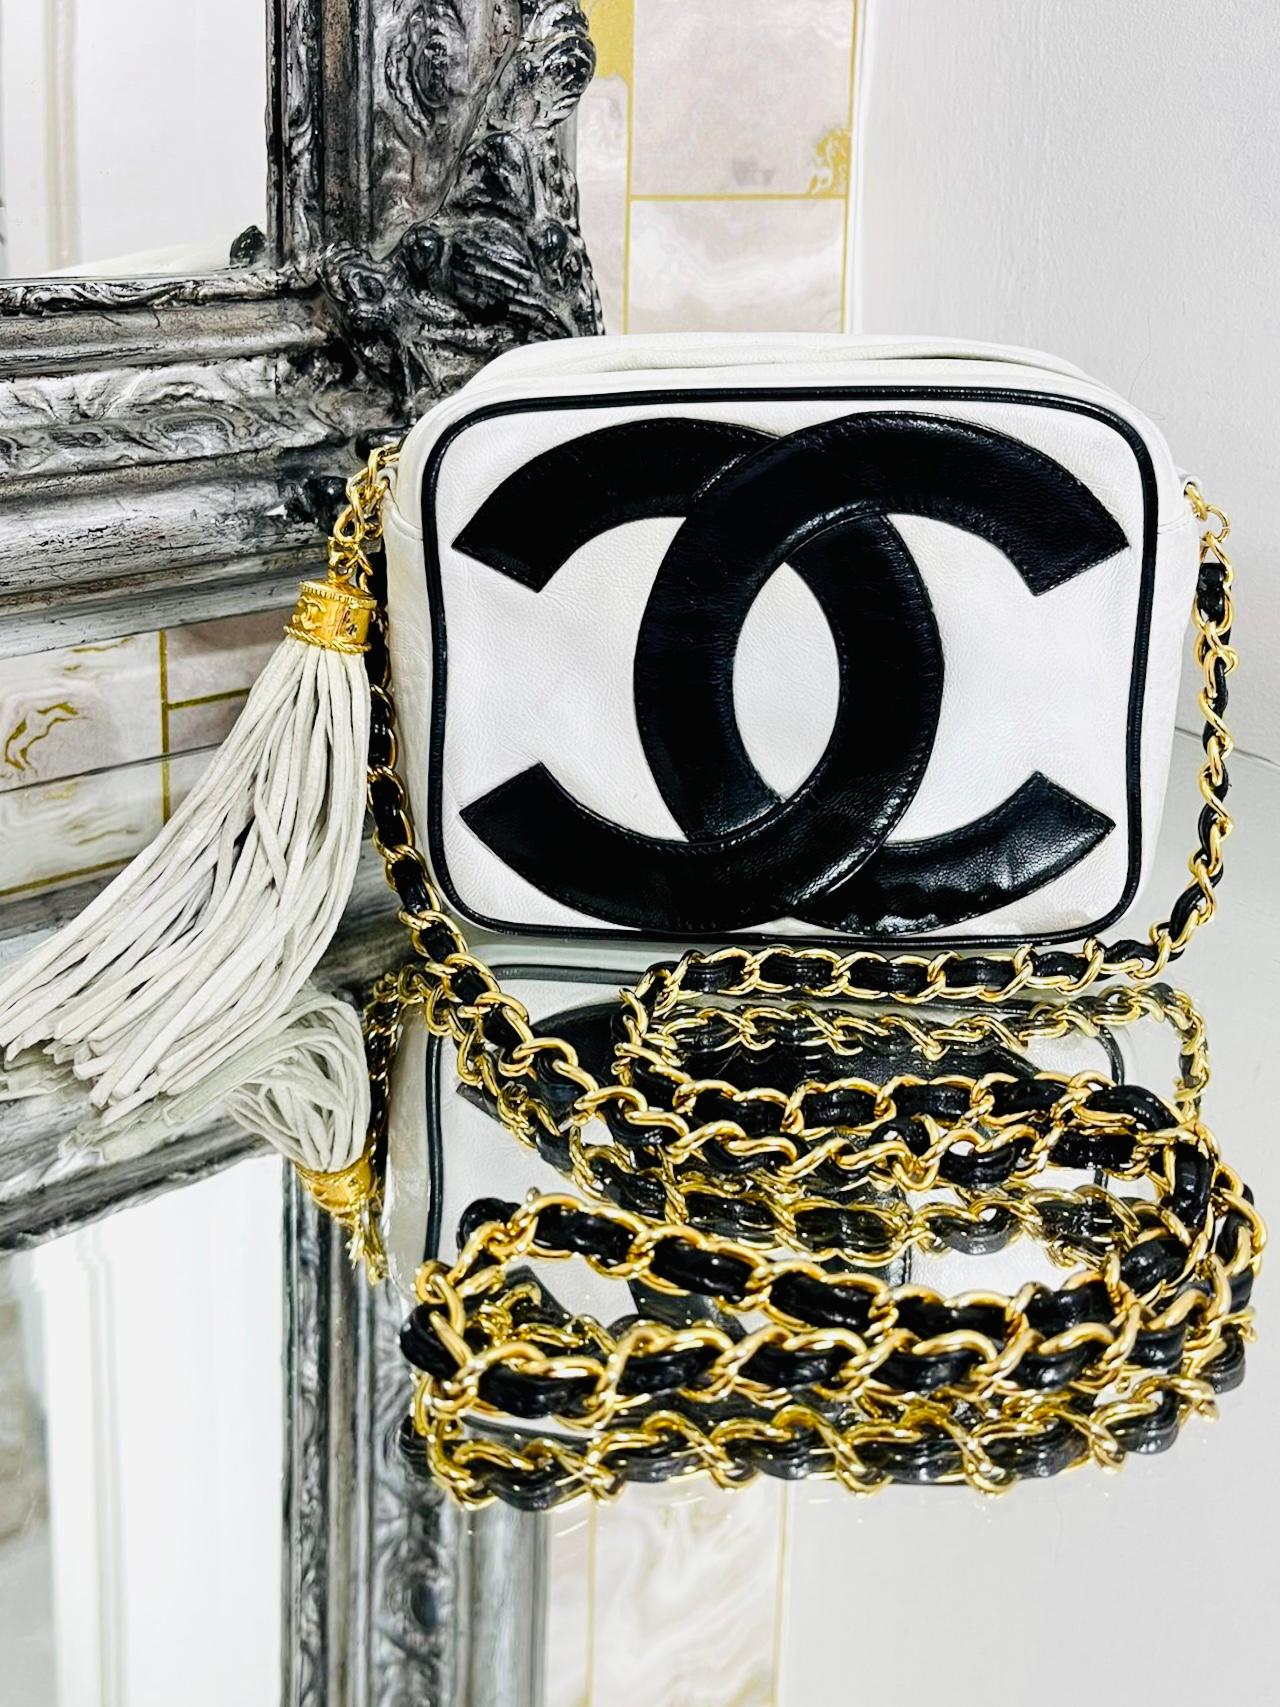 Très rare - Chanel Vintage Leather Double 'CC' Logo Camera Bag

Sac en cuir matelassé blanc, à bandoulière, avec grand logo noir 